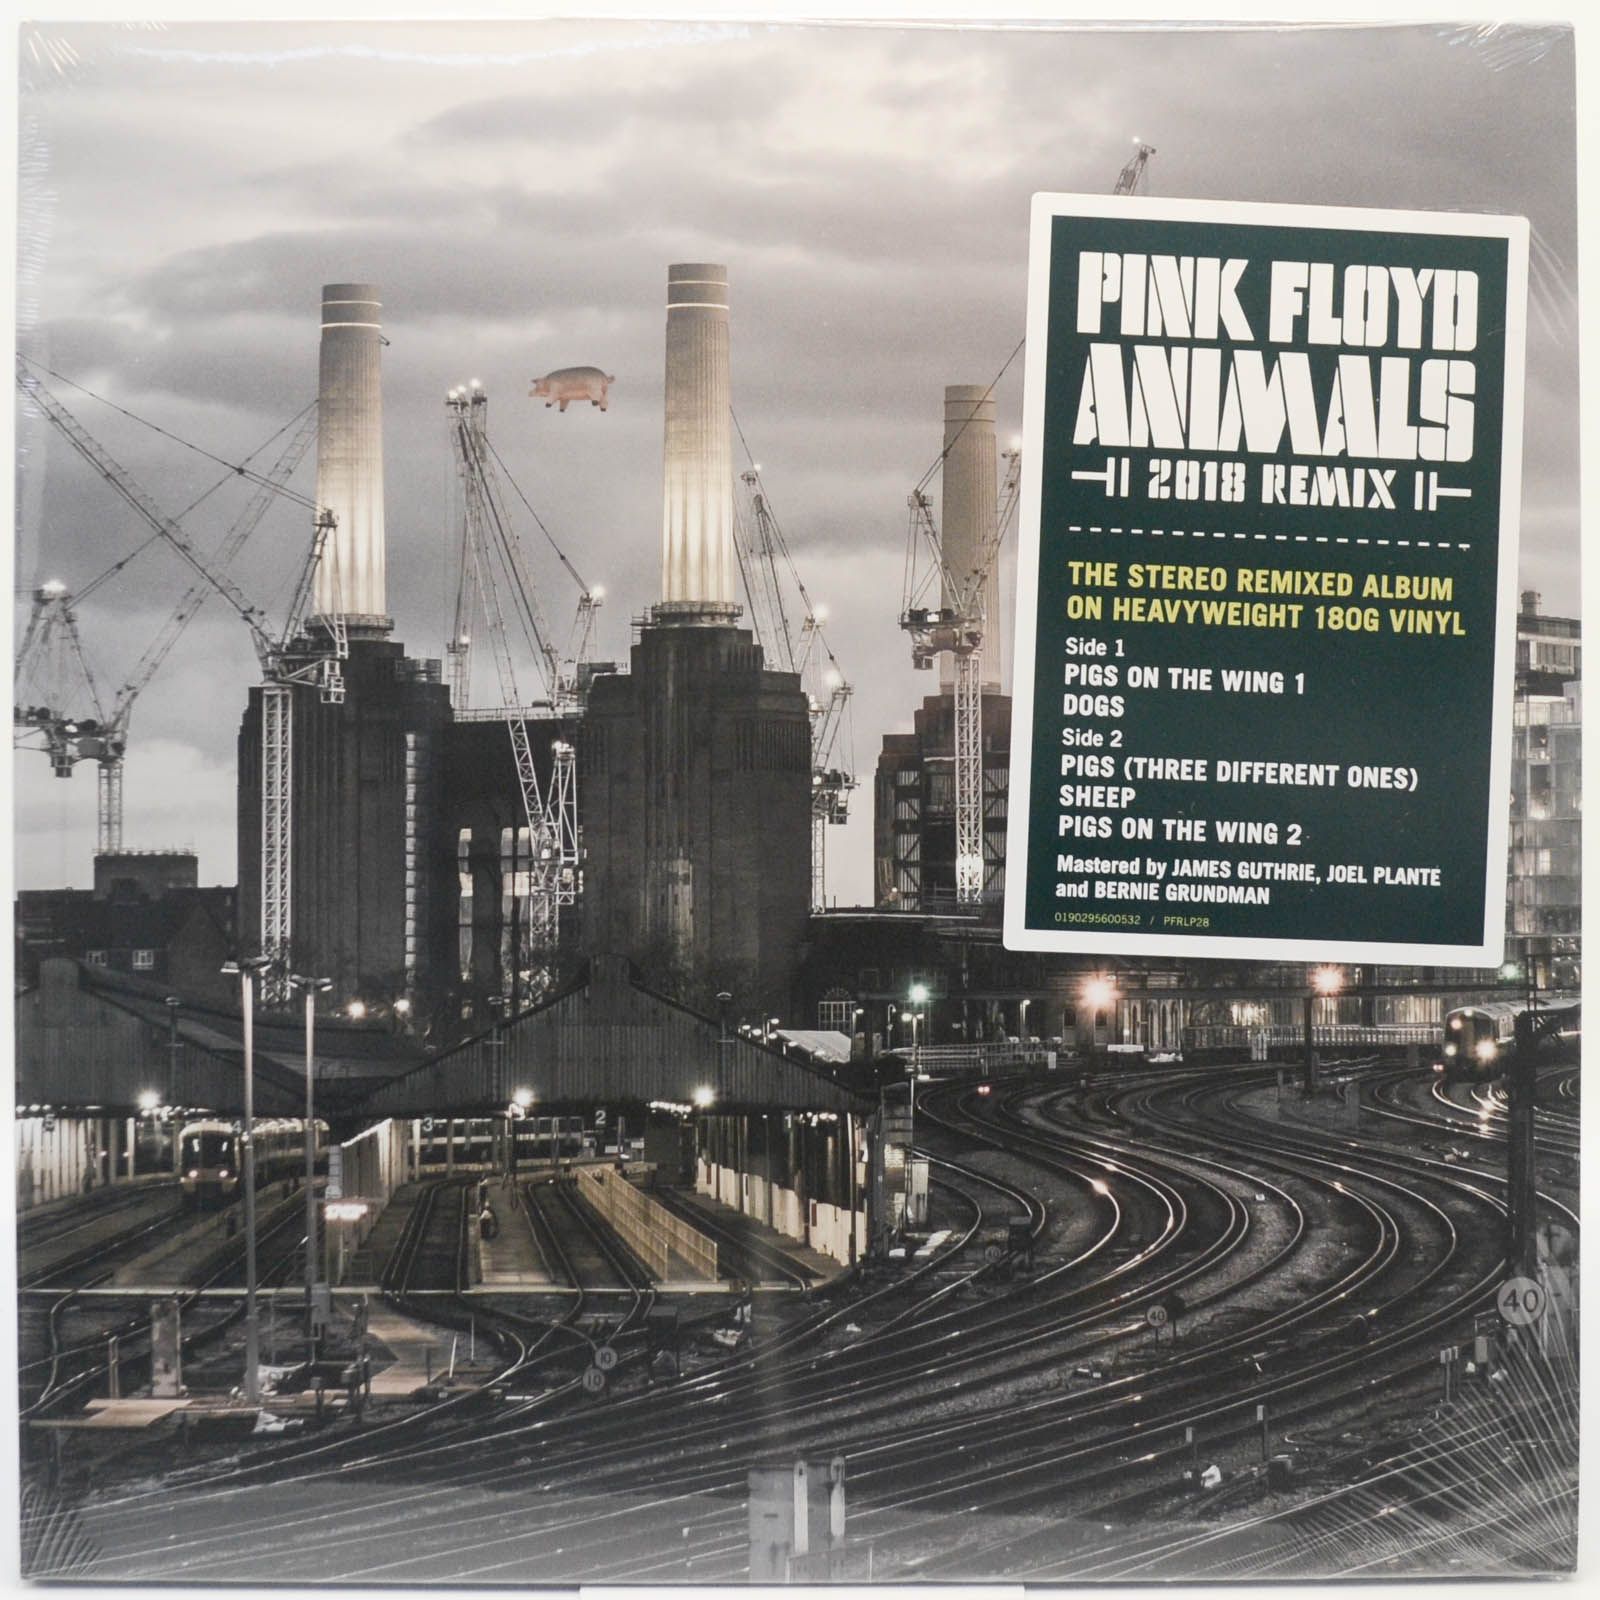 Pink Floyd — Animals (2018 Remix), 1977